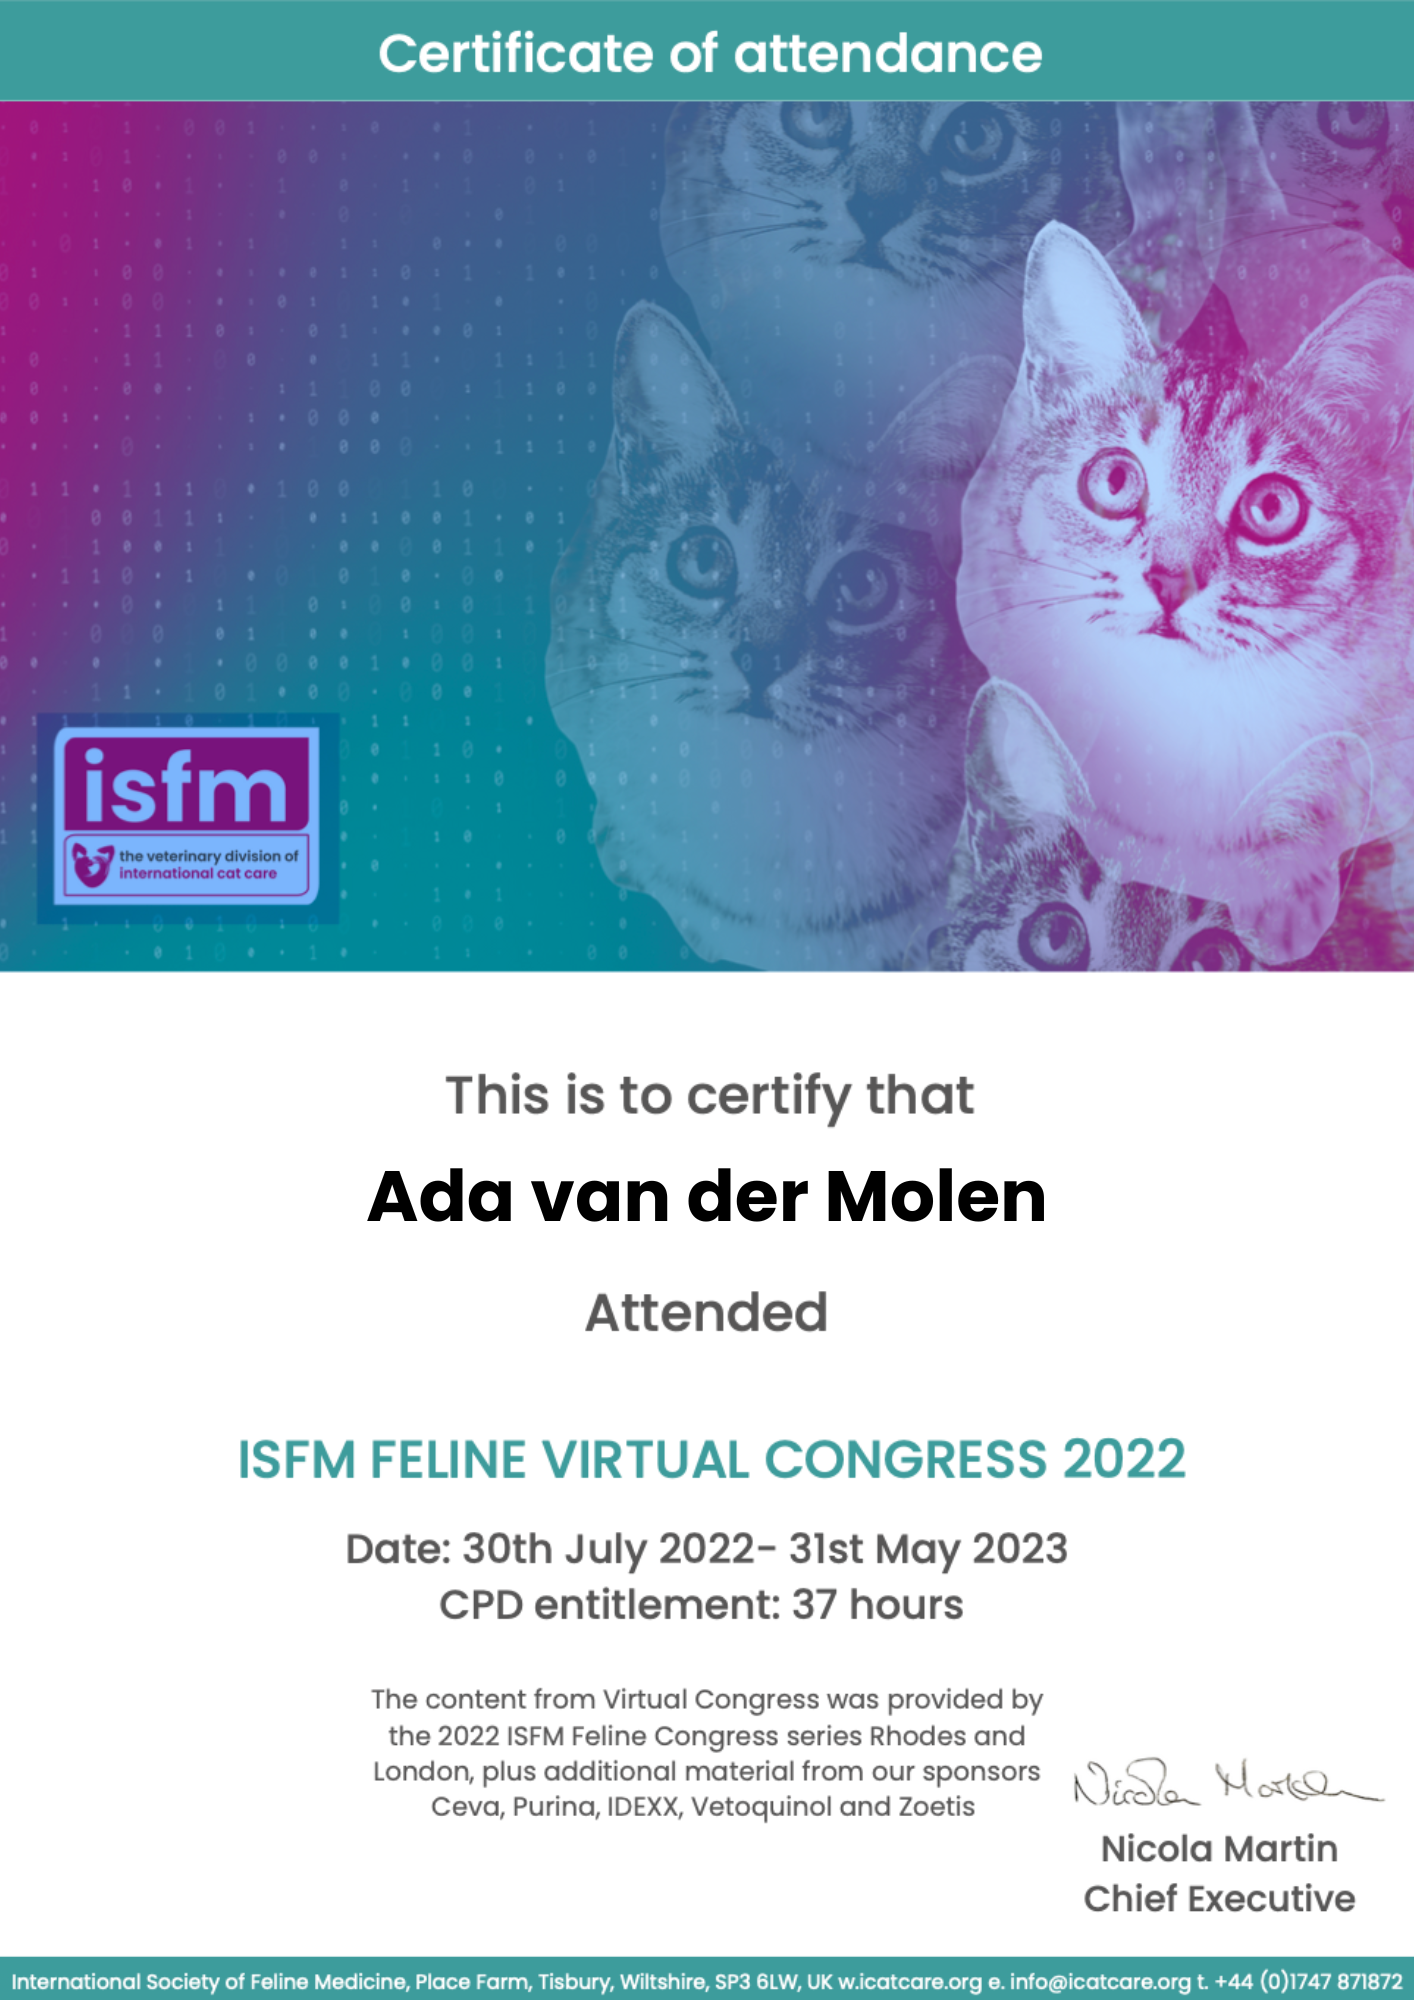 certificaat isfm feline fine congress 2022. katten kijken omhoog .